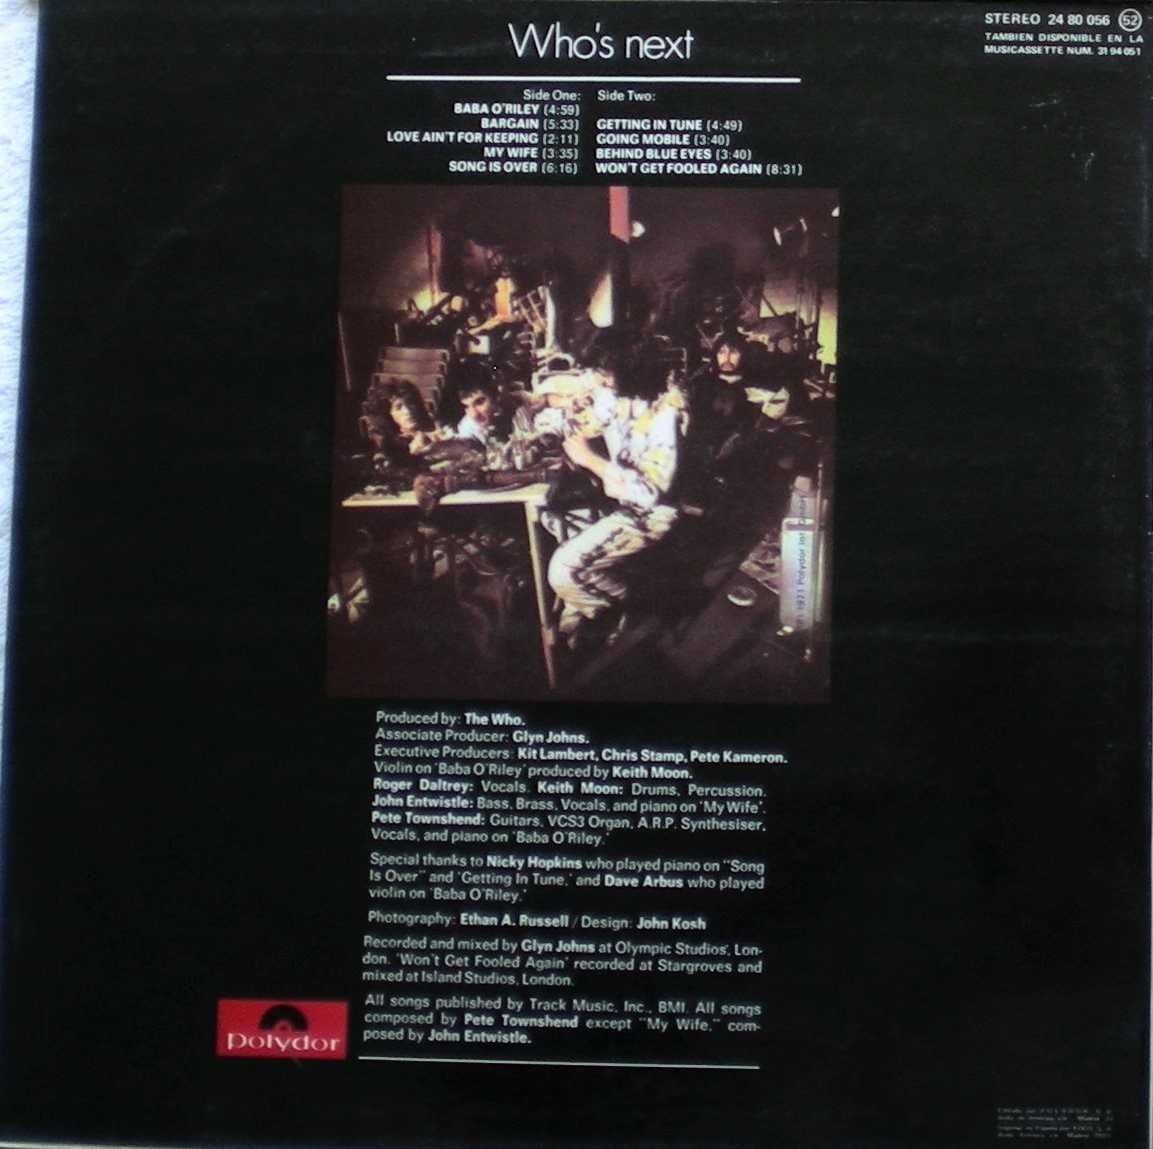 The Who - Who’s Next (1971) LP vinil & Tommy LP Duplo Vinil